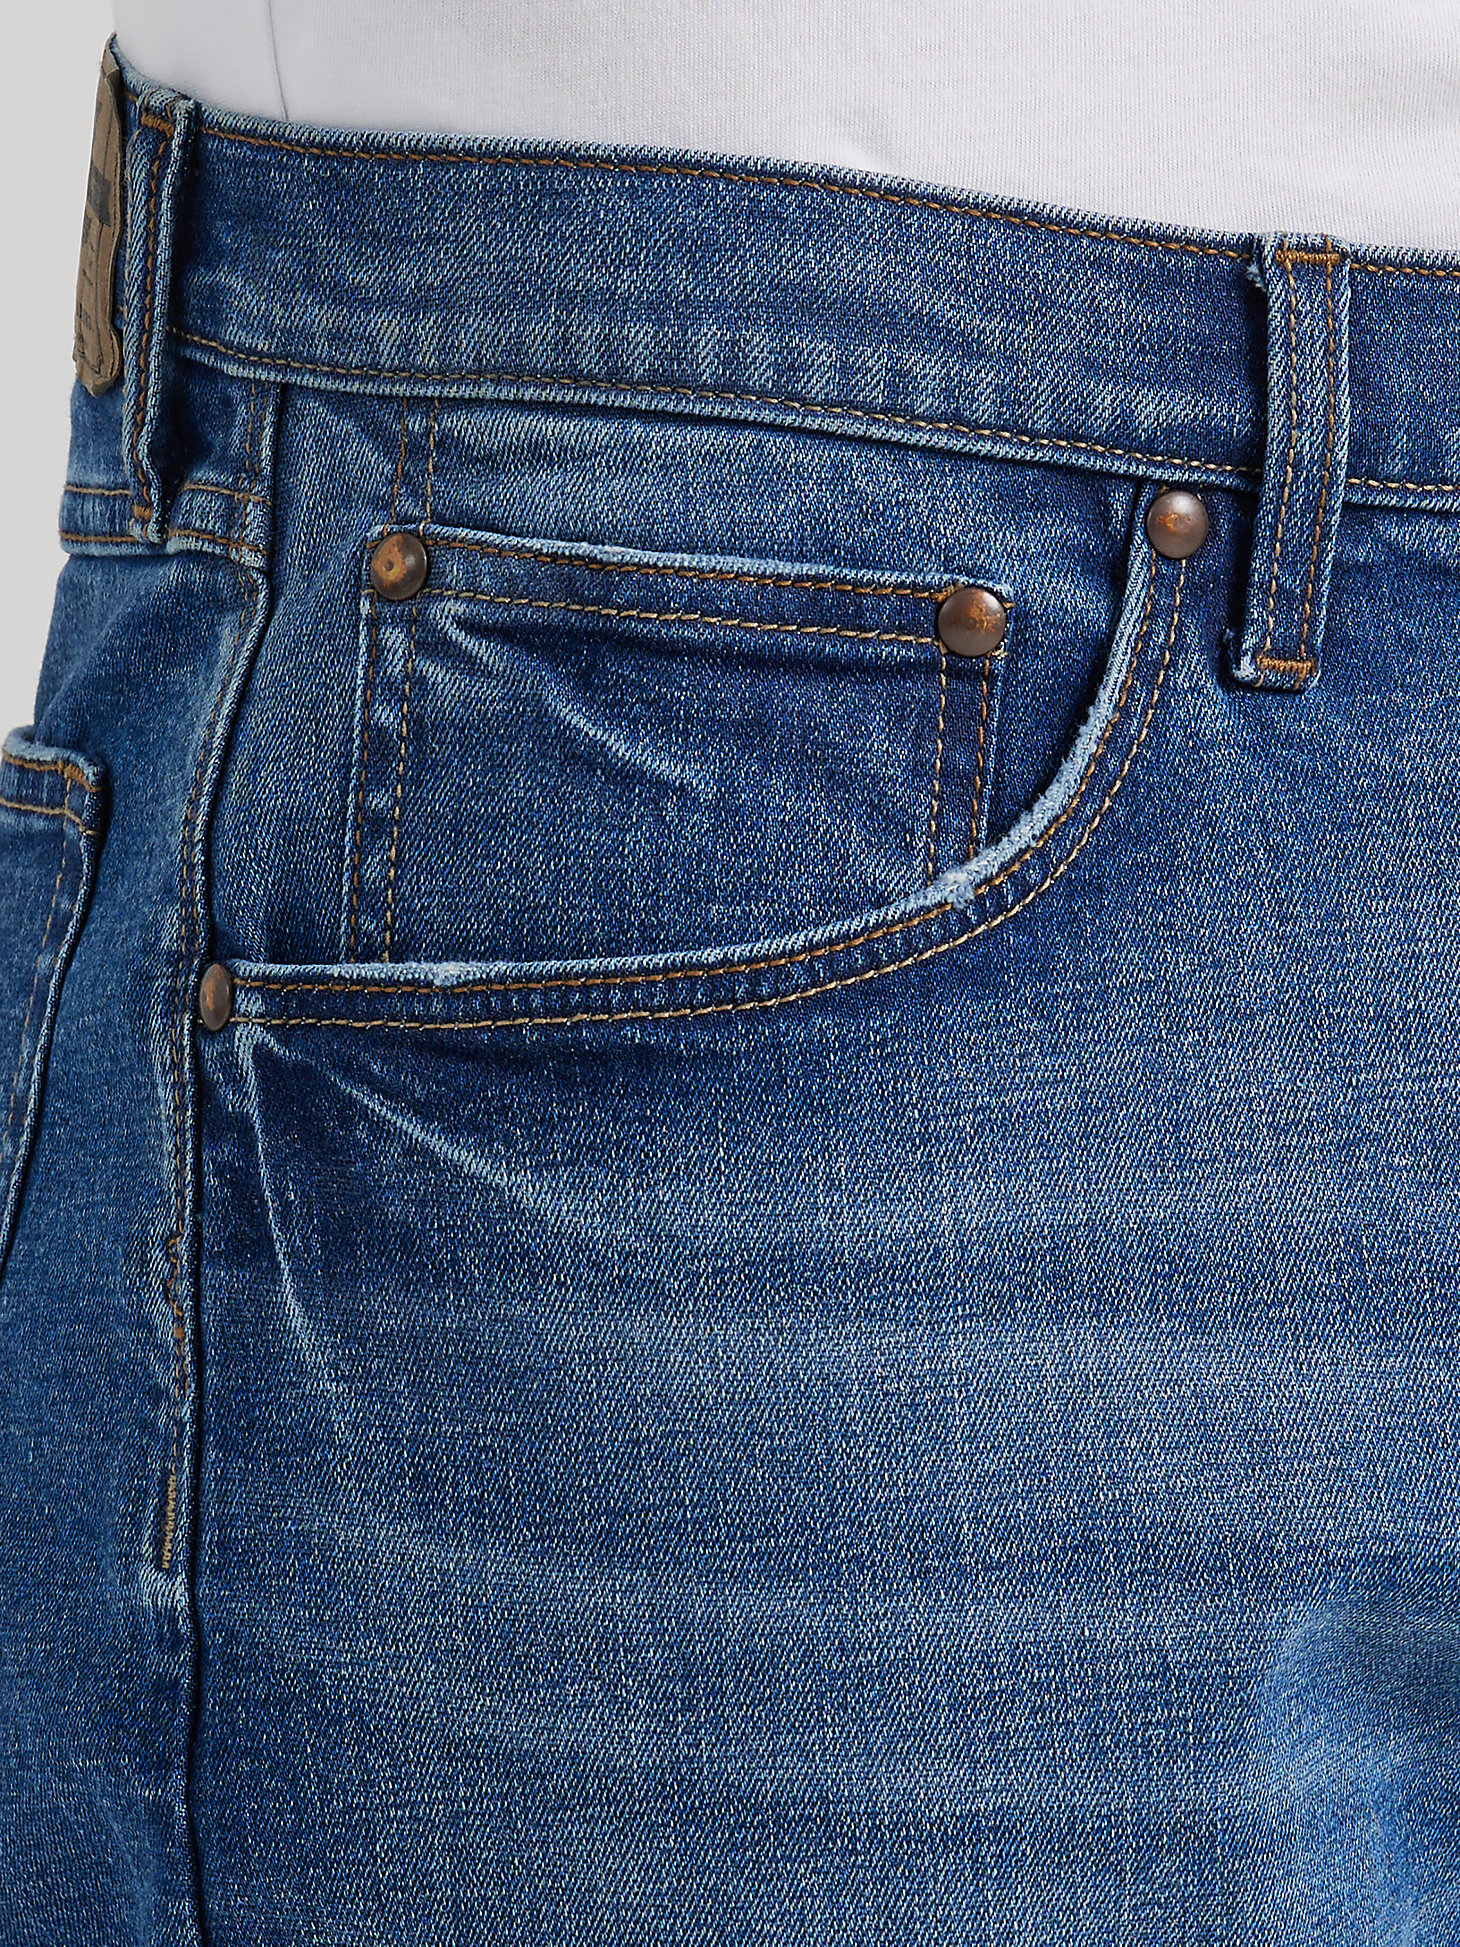 Men's Wrangler® Five Star Premium Athletic Fit Jean in Halifax alternative view 4